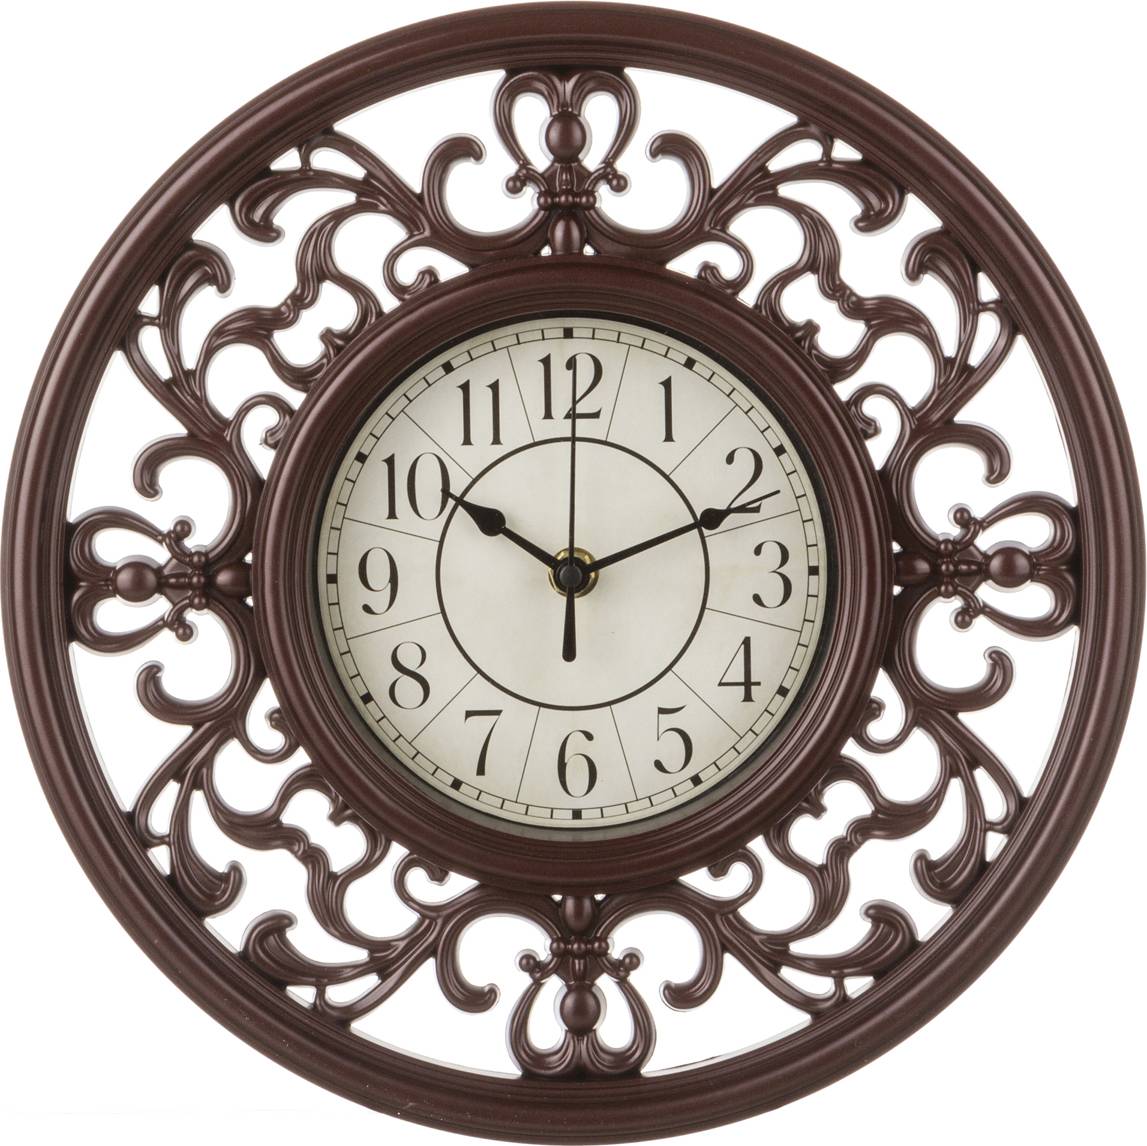 Сайты настенных часов. Часы кварцевые настенные 30 см. Lefard. Часы кварцевые настенные Lefard, 40x9x63 см (арт 204-247). Часы круглые. Часы настенные классические для гостиной.